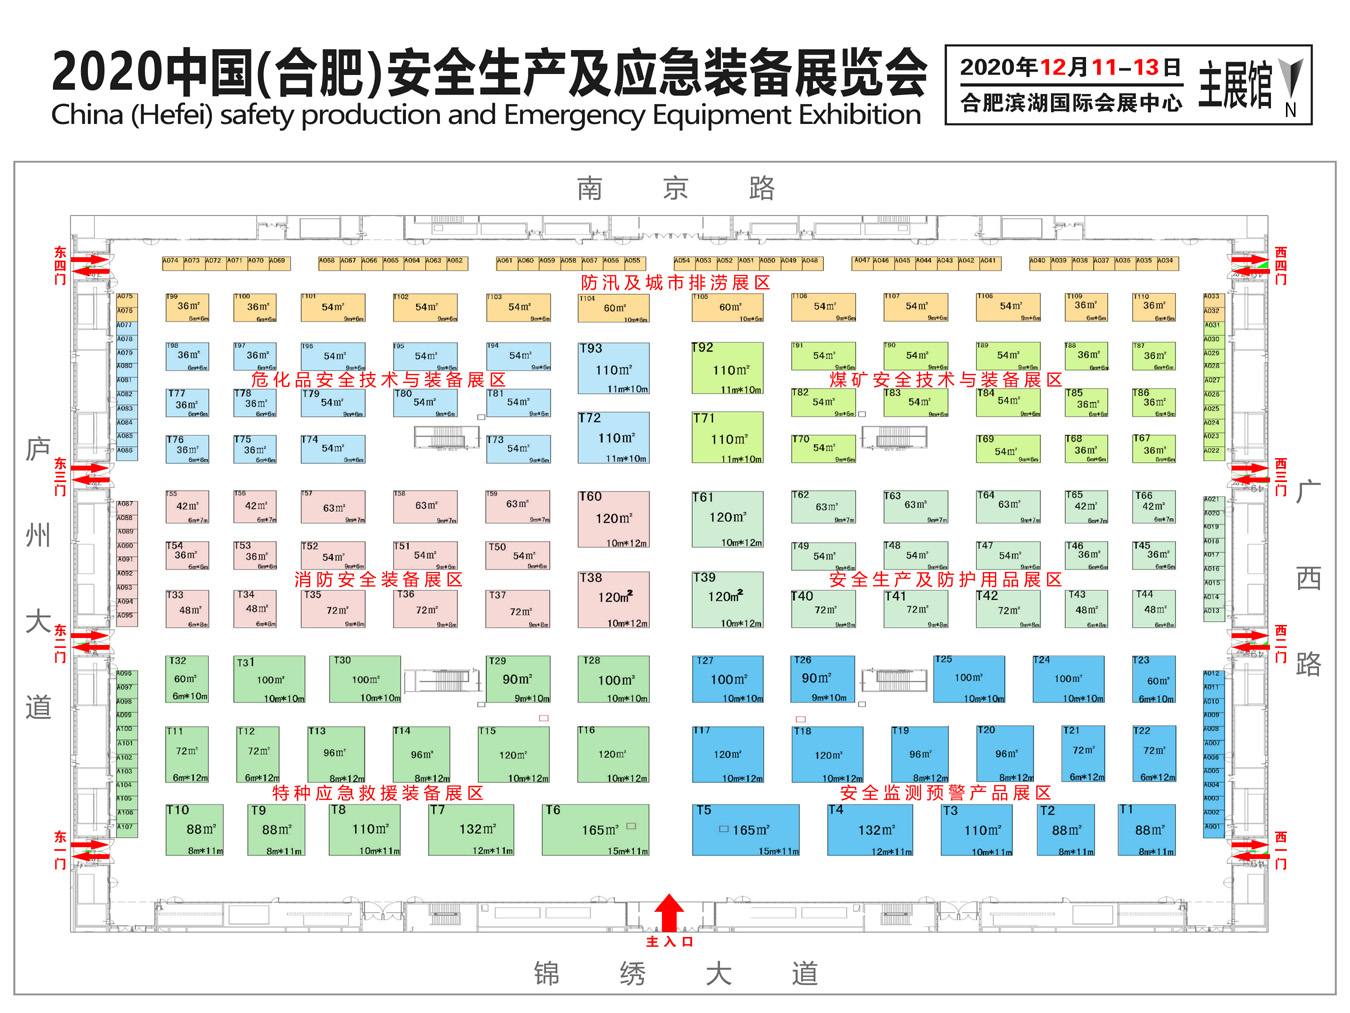 2020中国（合肥）安全生产及应急装备展览会